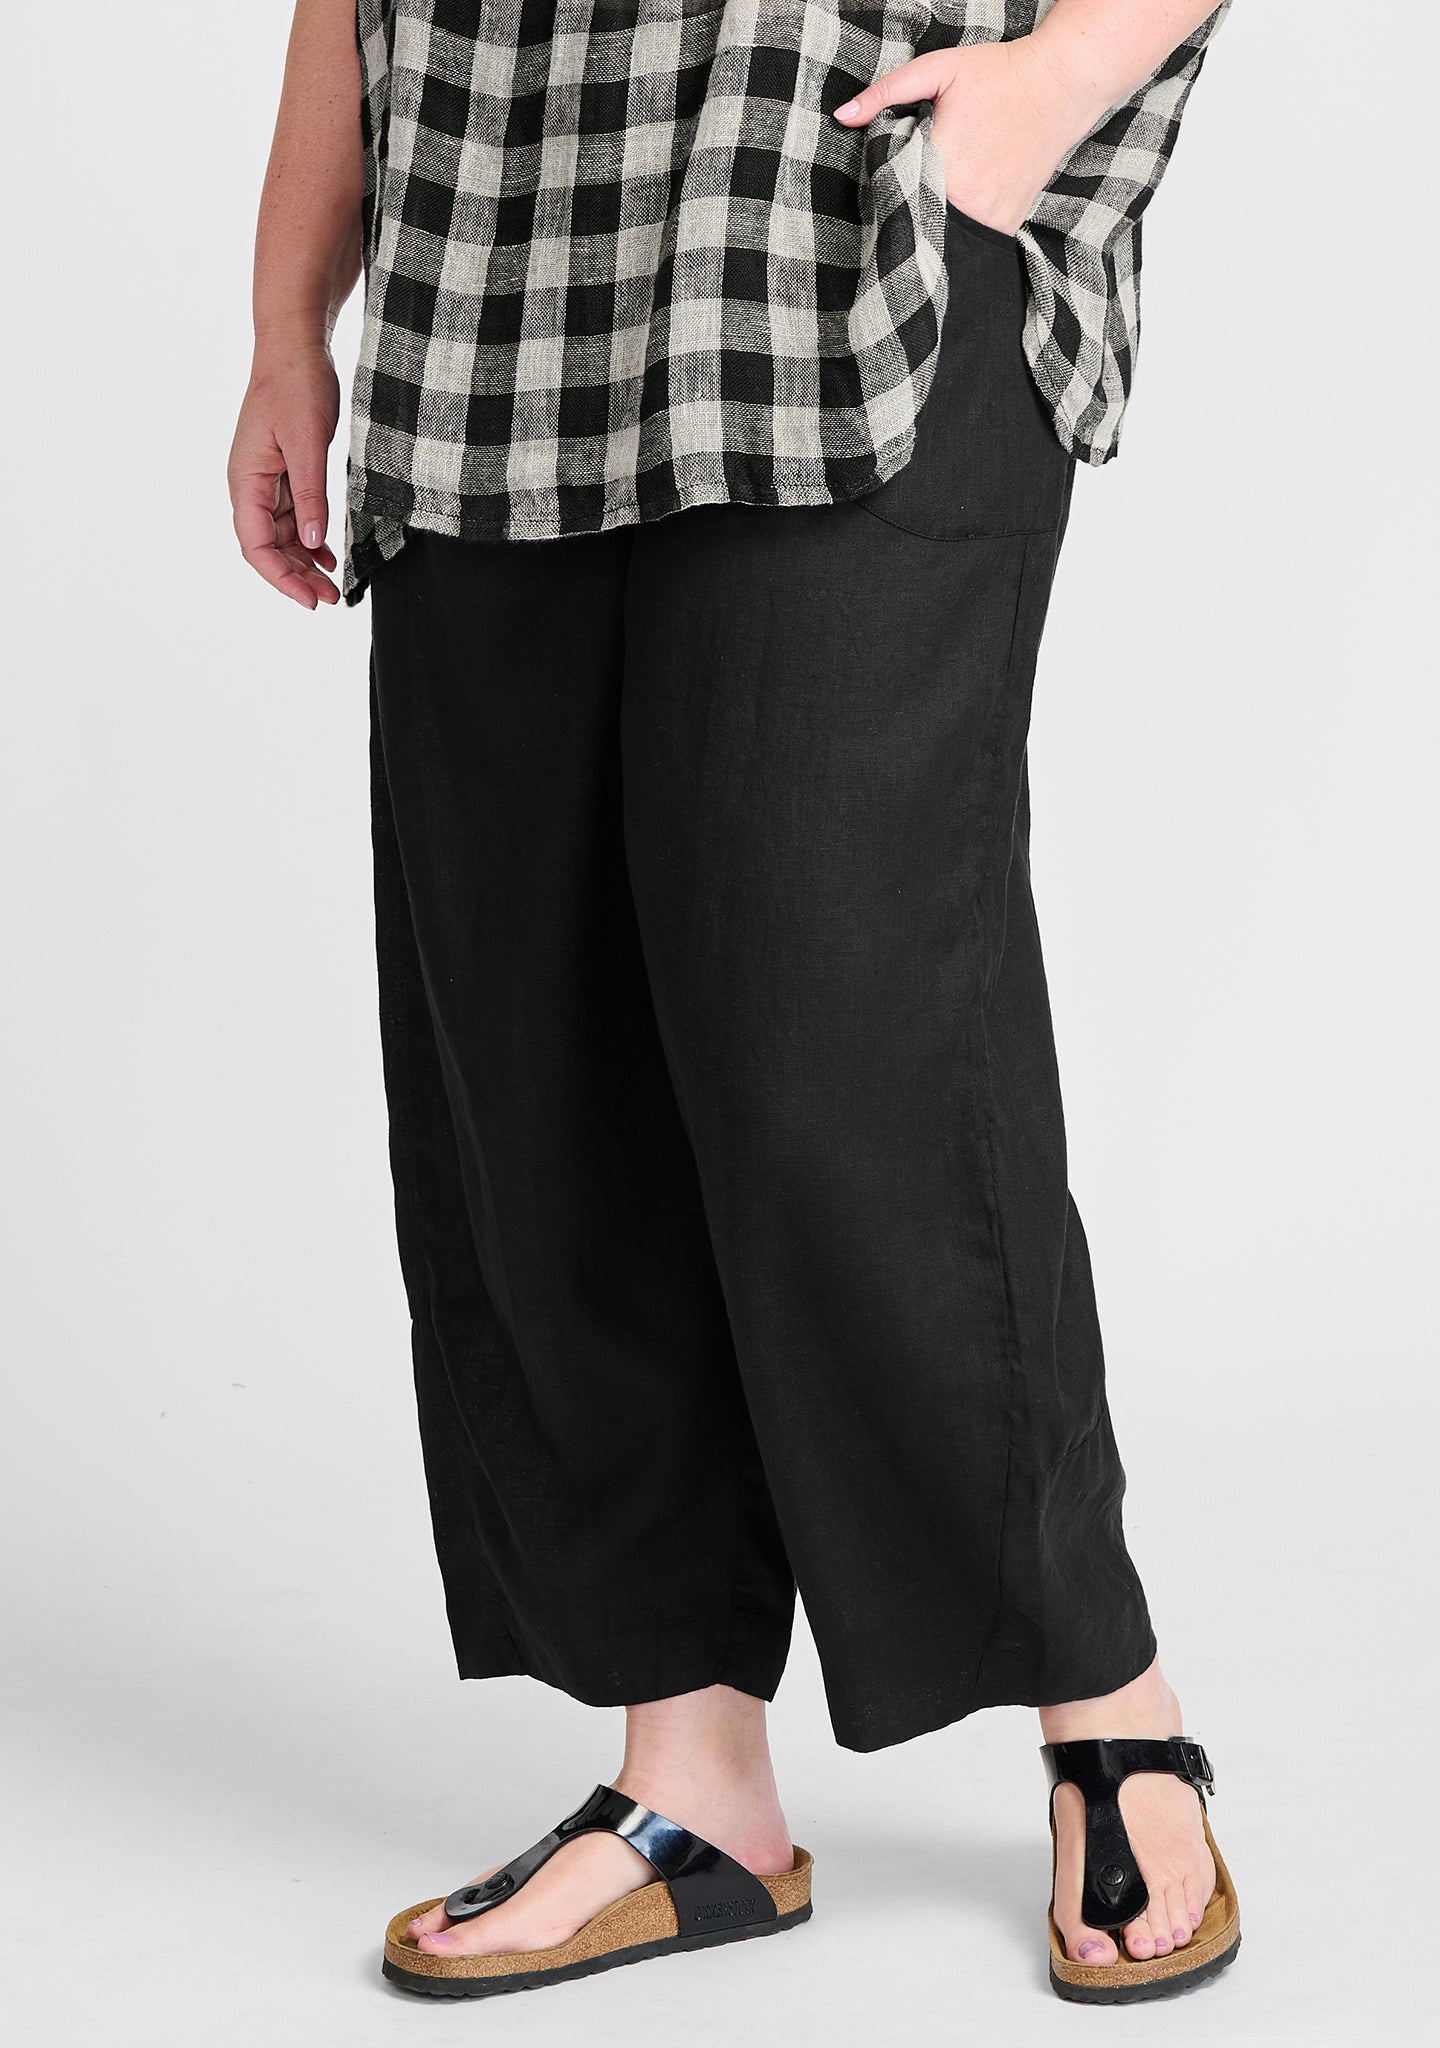 Shop Ladies Pants, Linen Pants